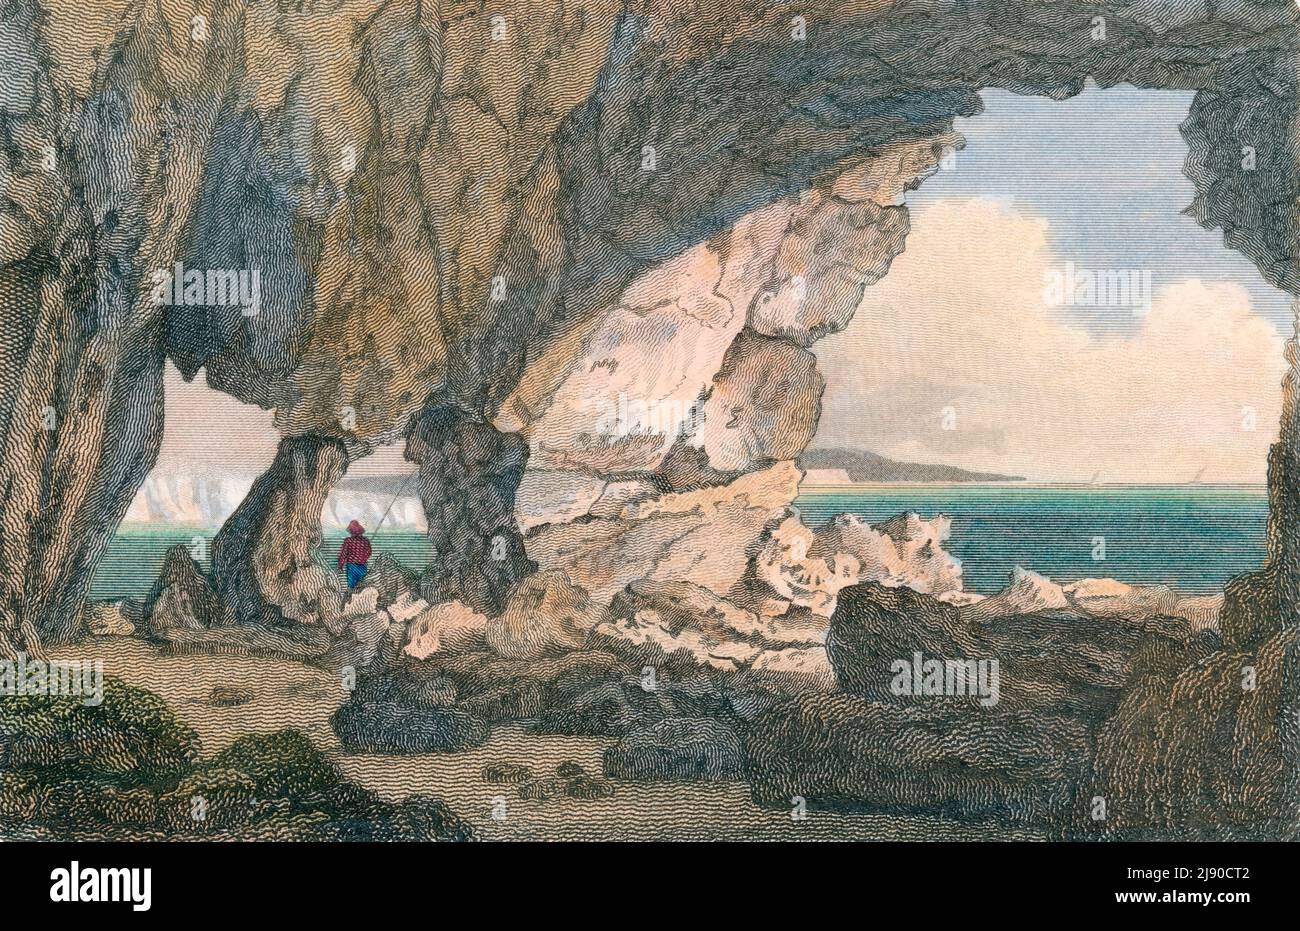 Grotte d'eau douce, île de Wight, Hampshire, des beautés de l'Angleterre et du pays de Galles, dessin de F. Nash, gravé par John Smith, couleur main, 1805 Banque D'Images